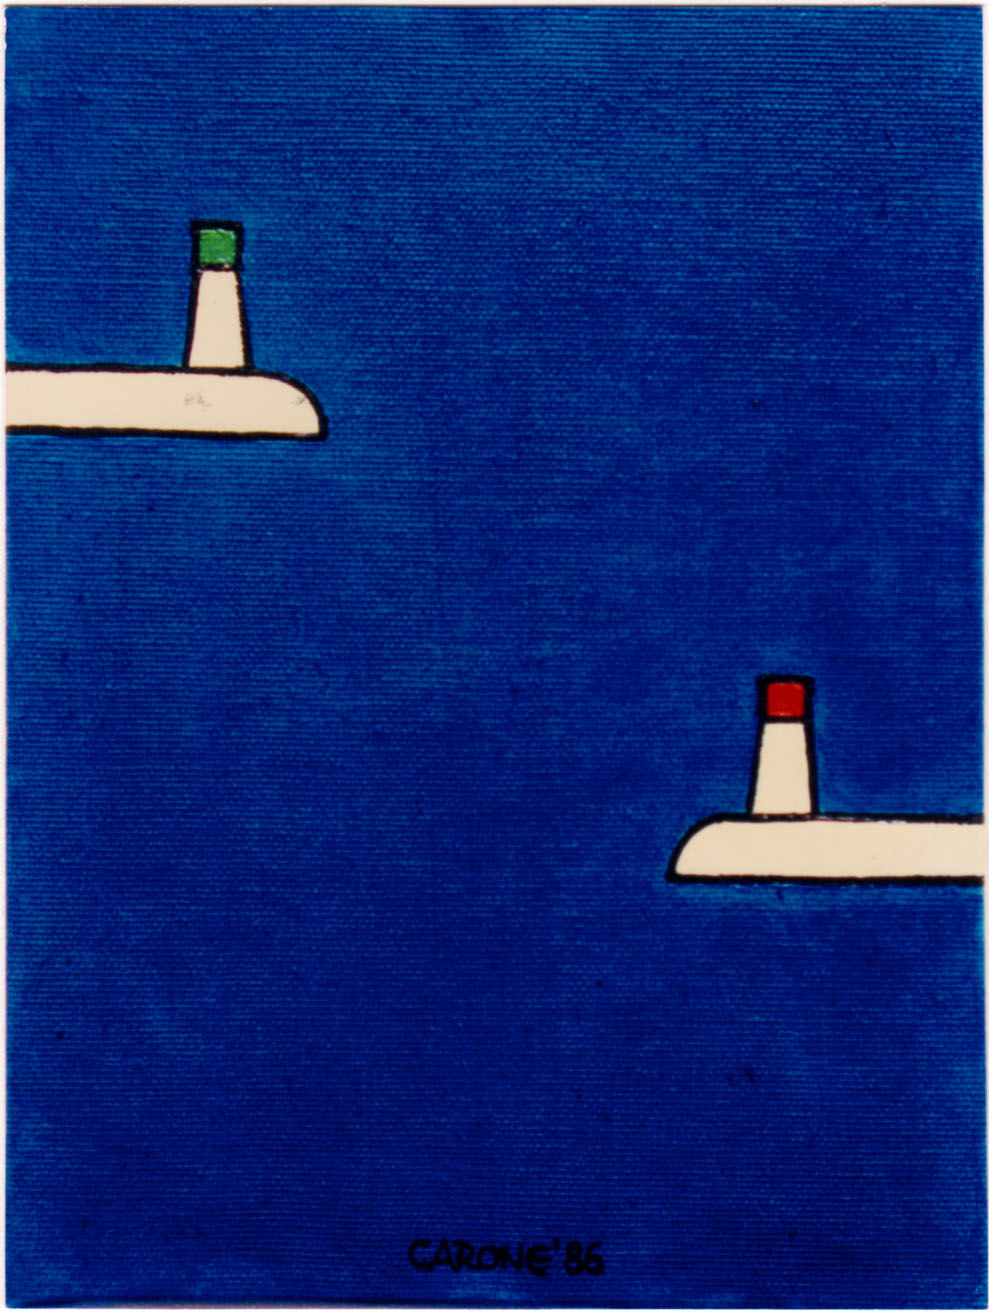 IL PORTO DI BARI . 1986 - Colori acrilici su tela, cm.30 x 20
Collezione Mara Labriola, Bari